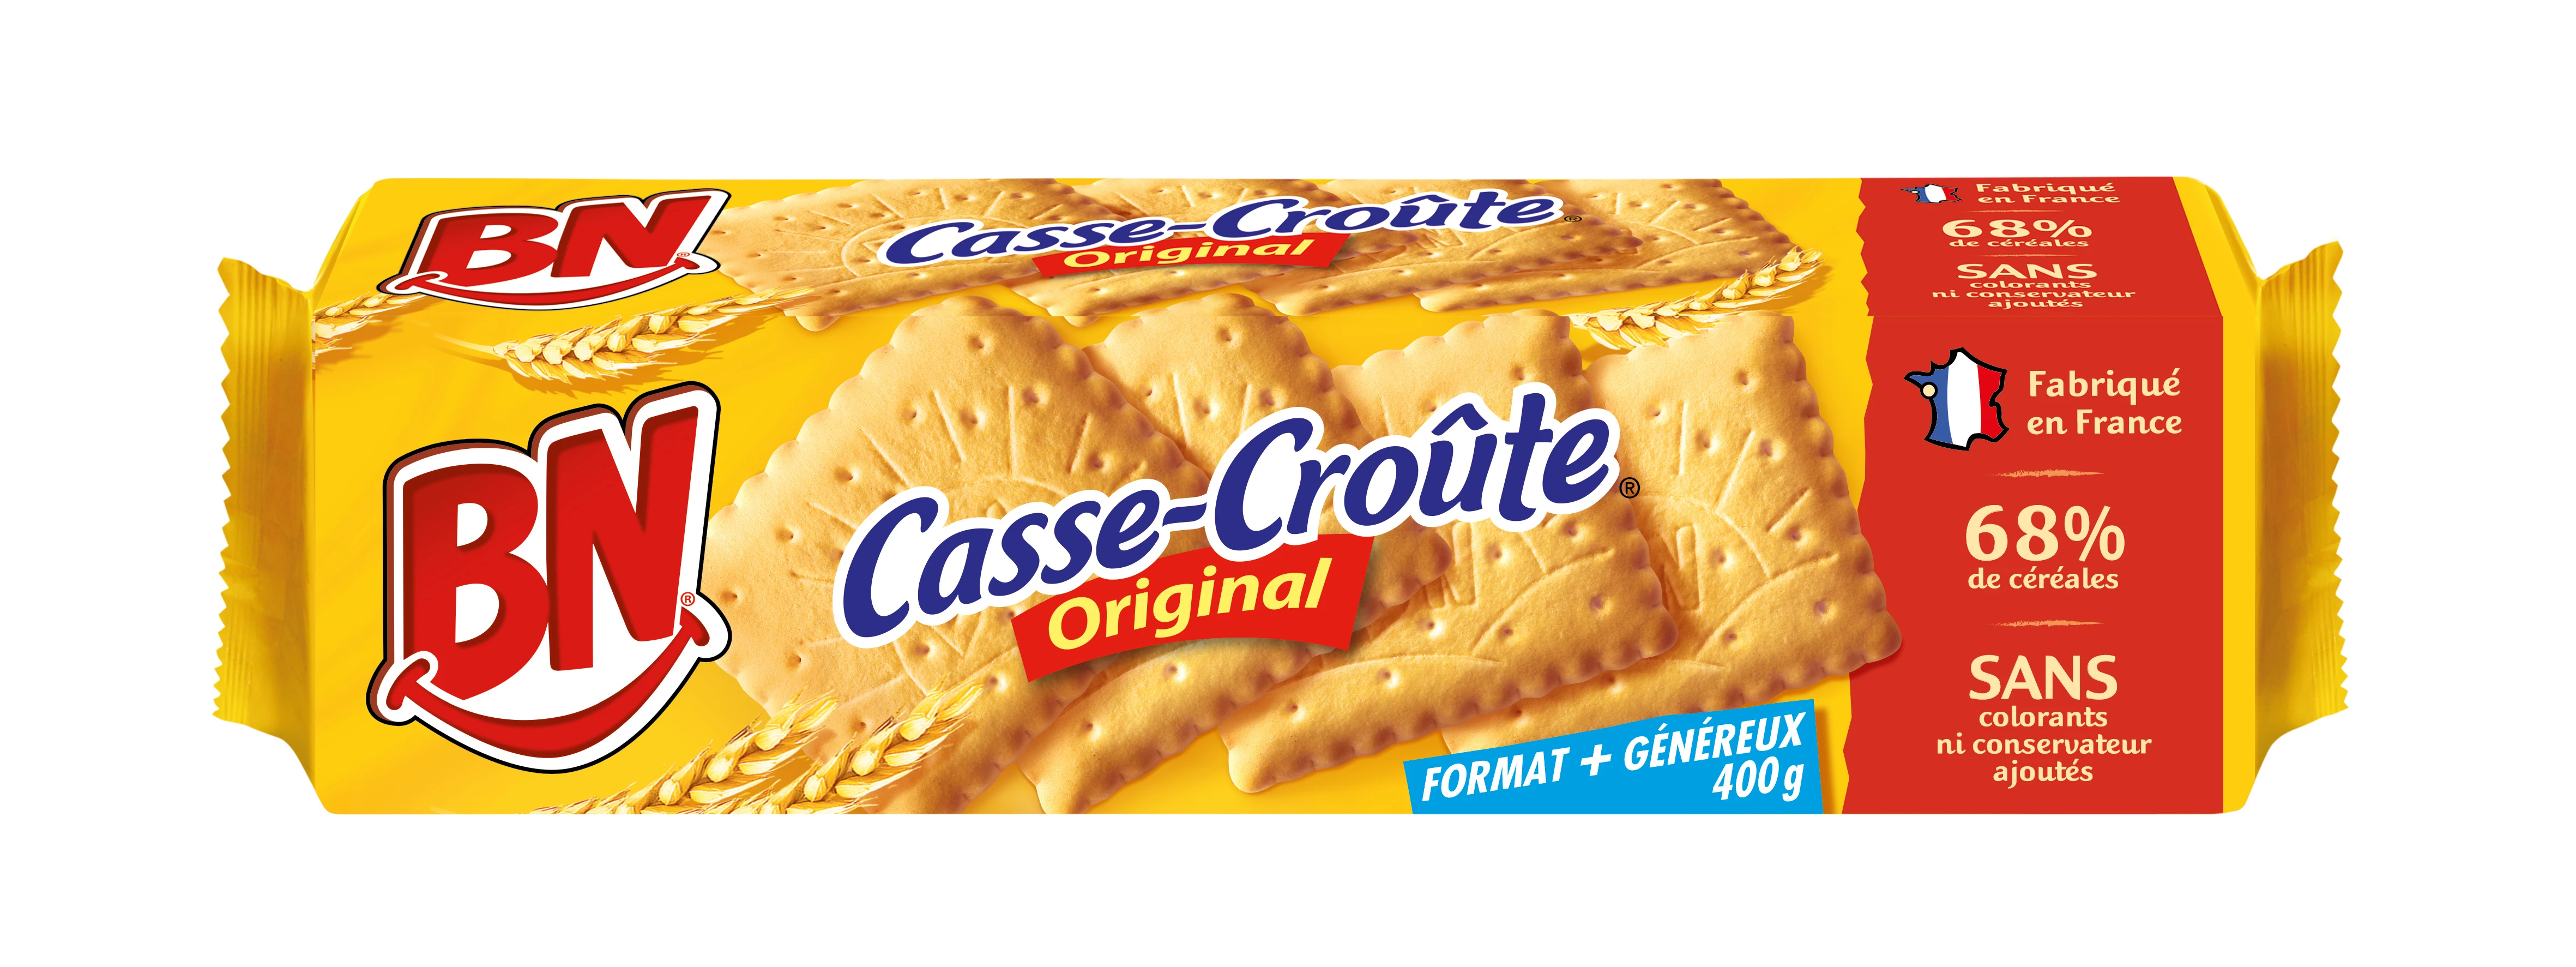 Biscoitos de café da manhã Casse Croute 400g - BN